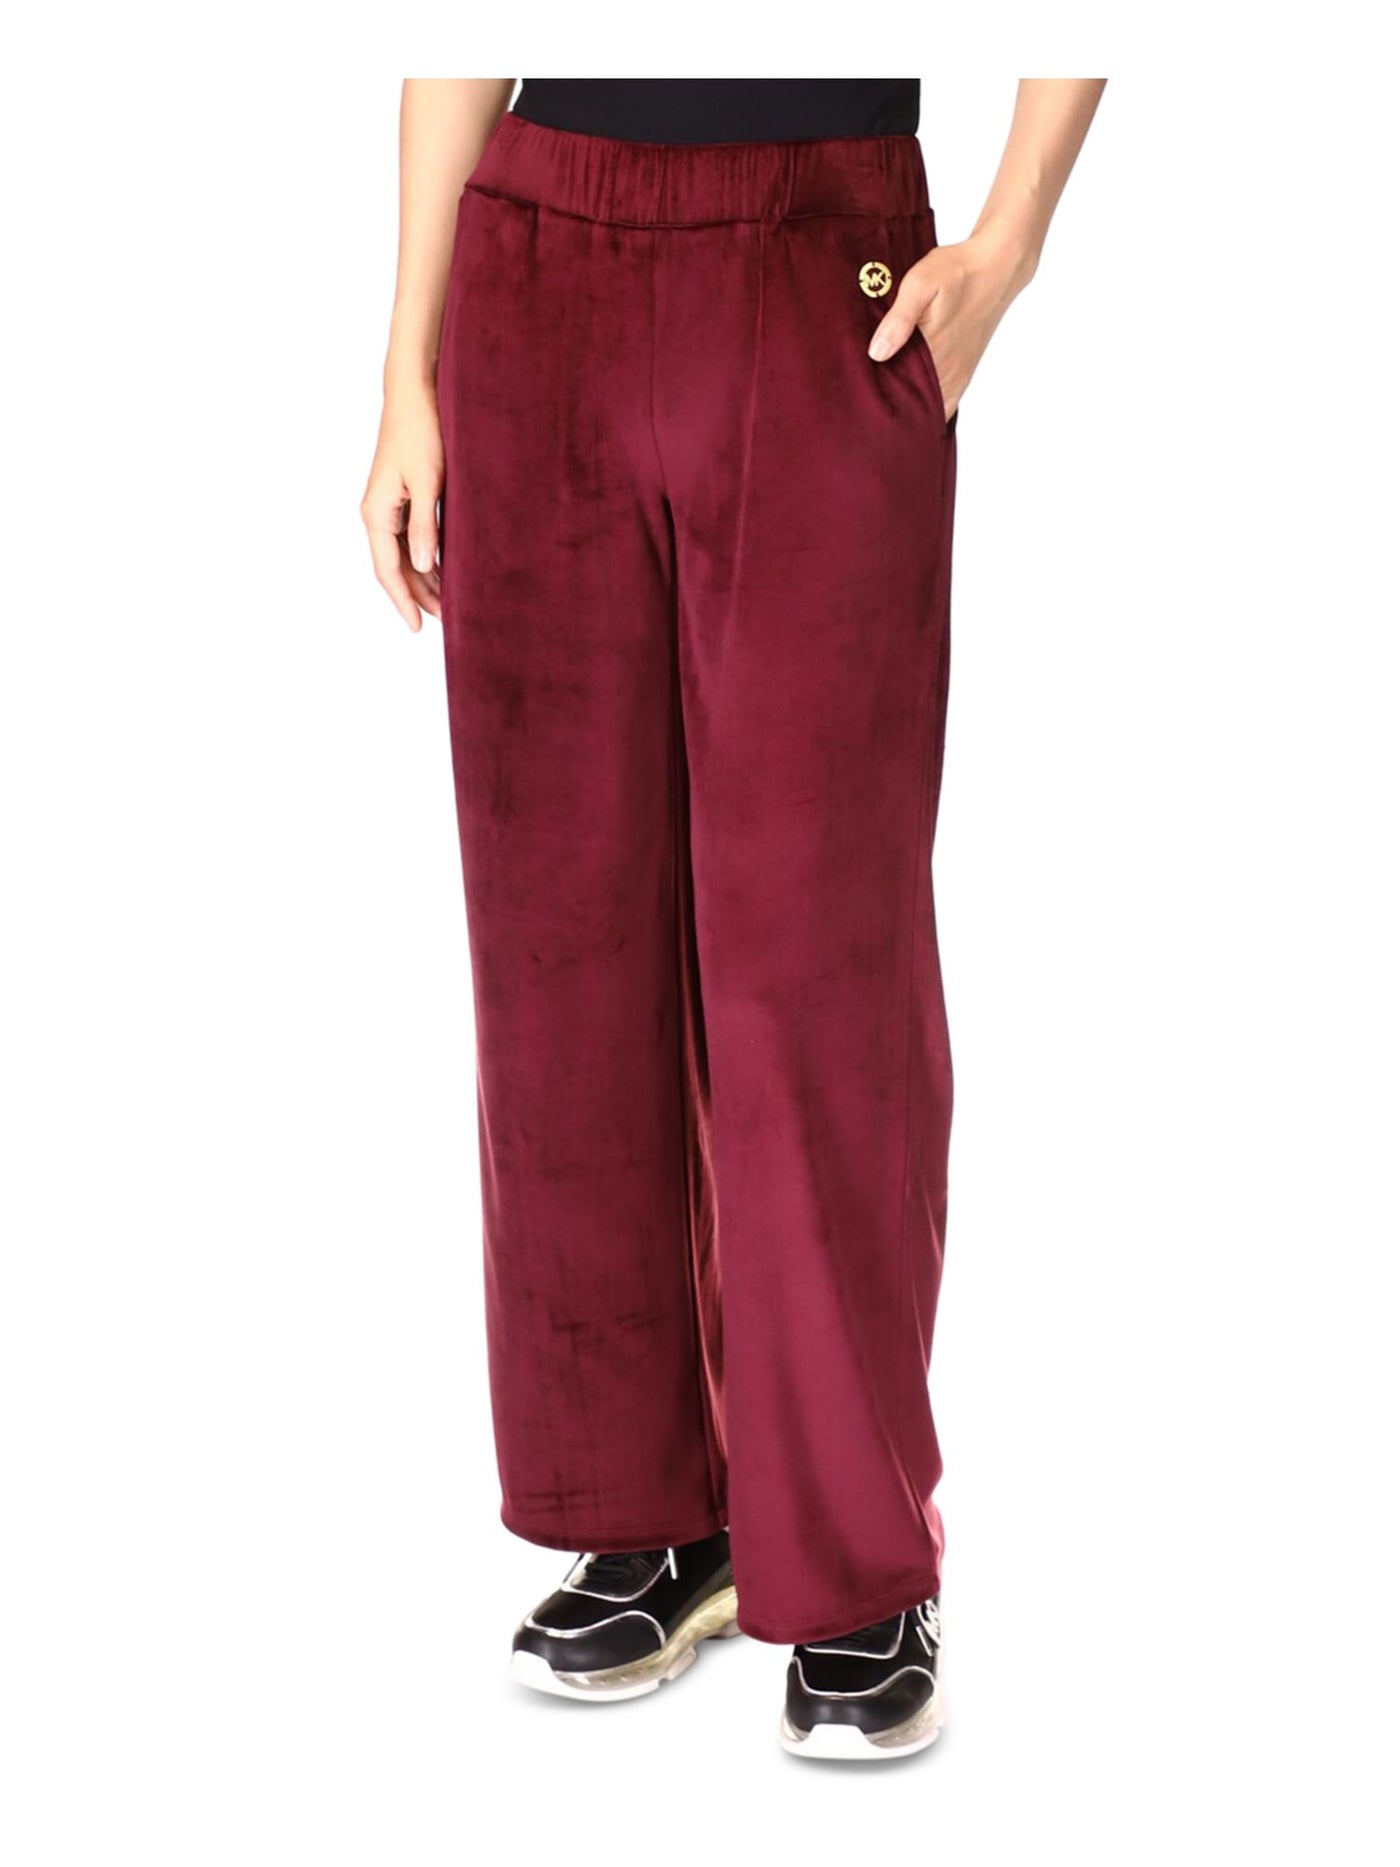 MICHAEL MICHAEL KORS Womens Burgundy Pocketed Pull-on Metallic Logo Velour Straight leg Pants S